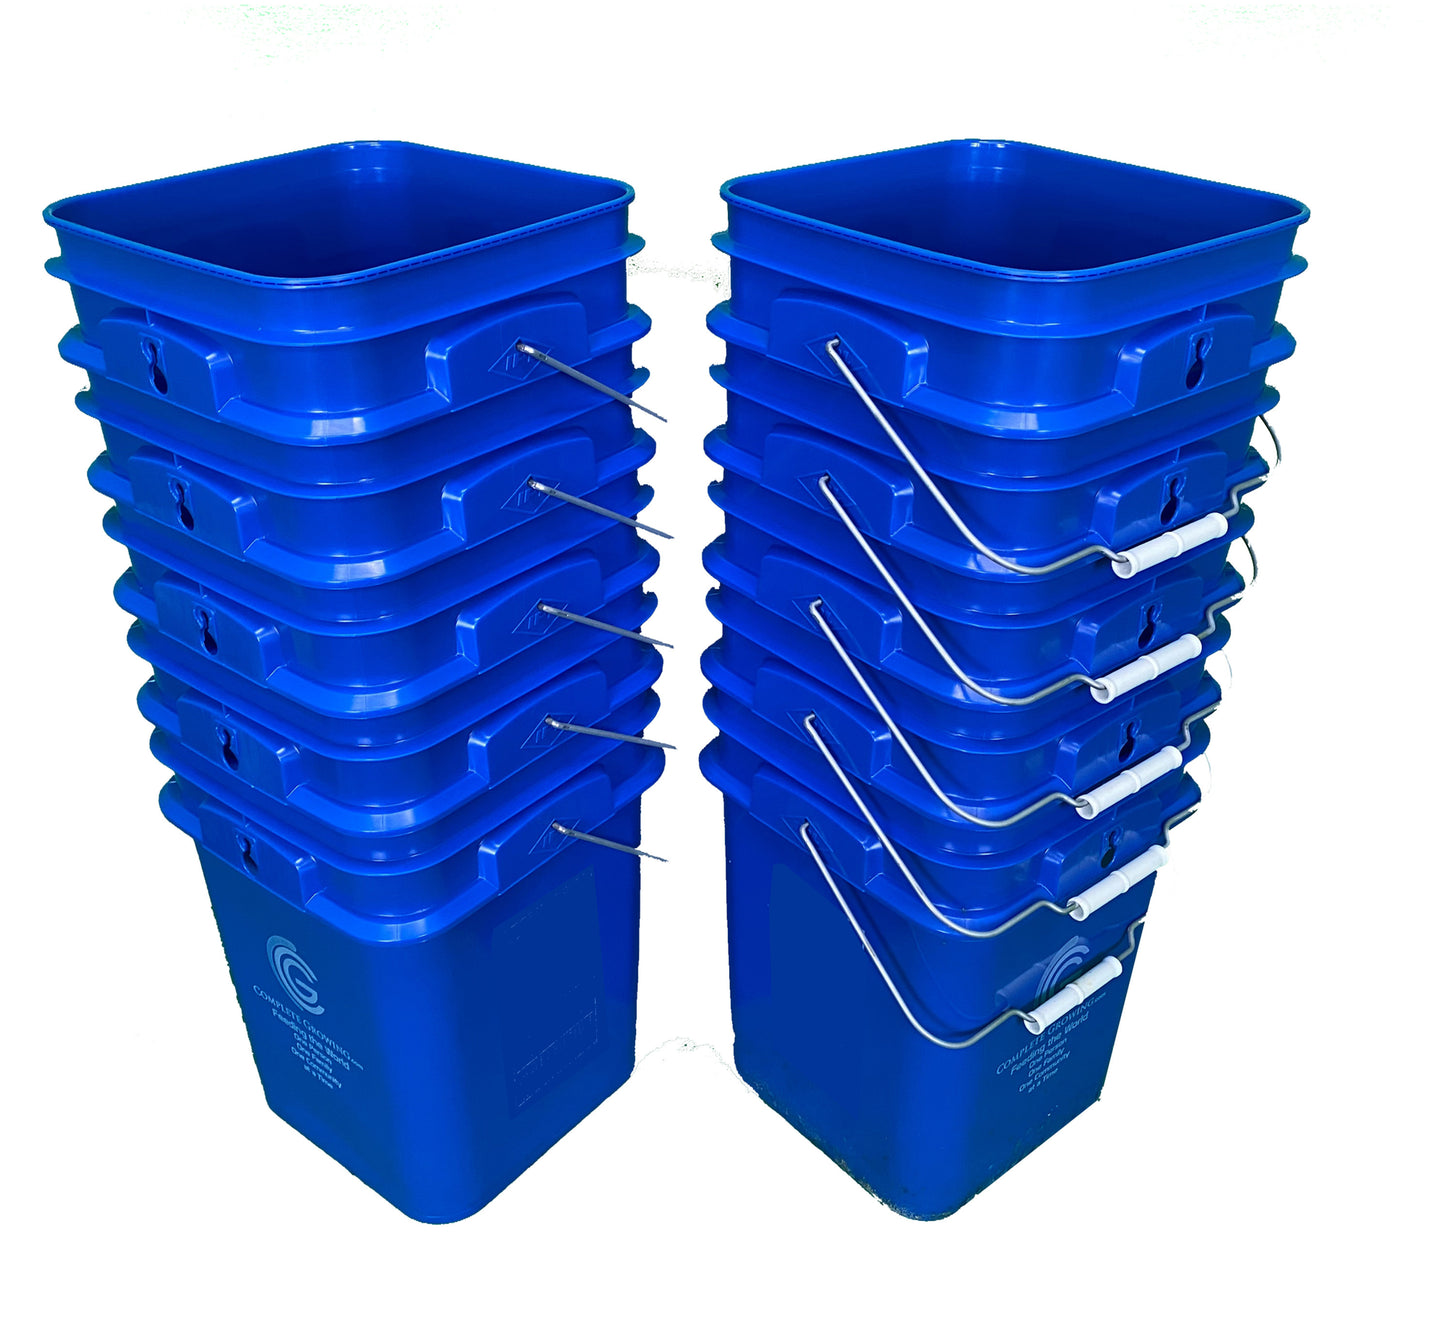 10 - 4 gallon square buckets